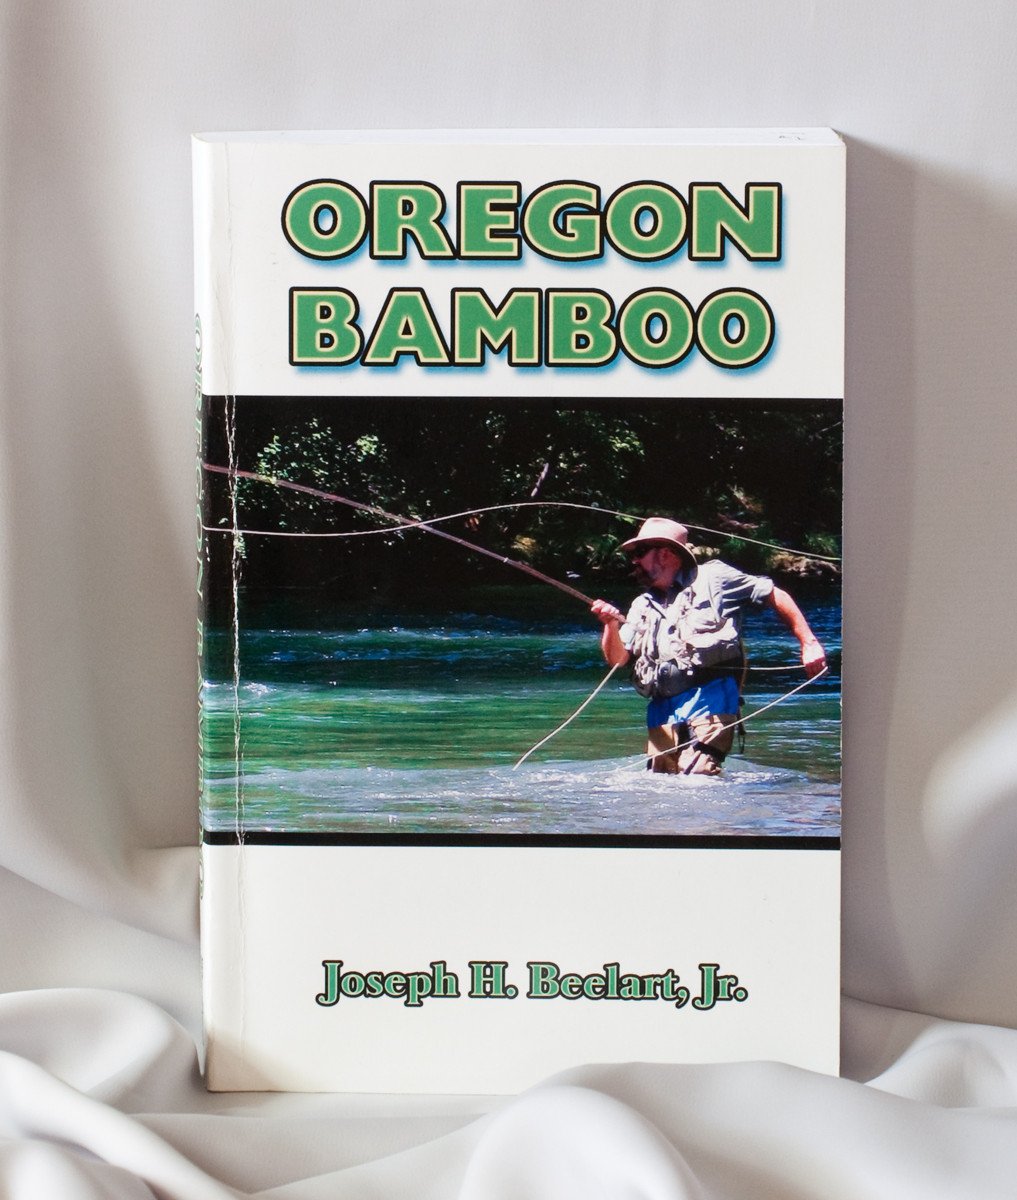 Beelart, Joe - Oregon Bamboo - Spinoza Rod Company